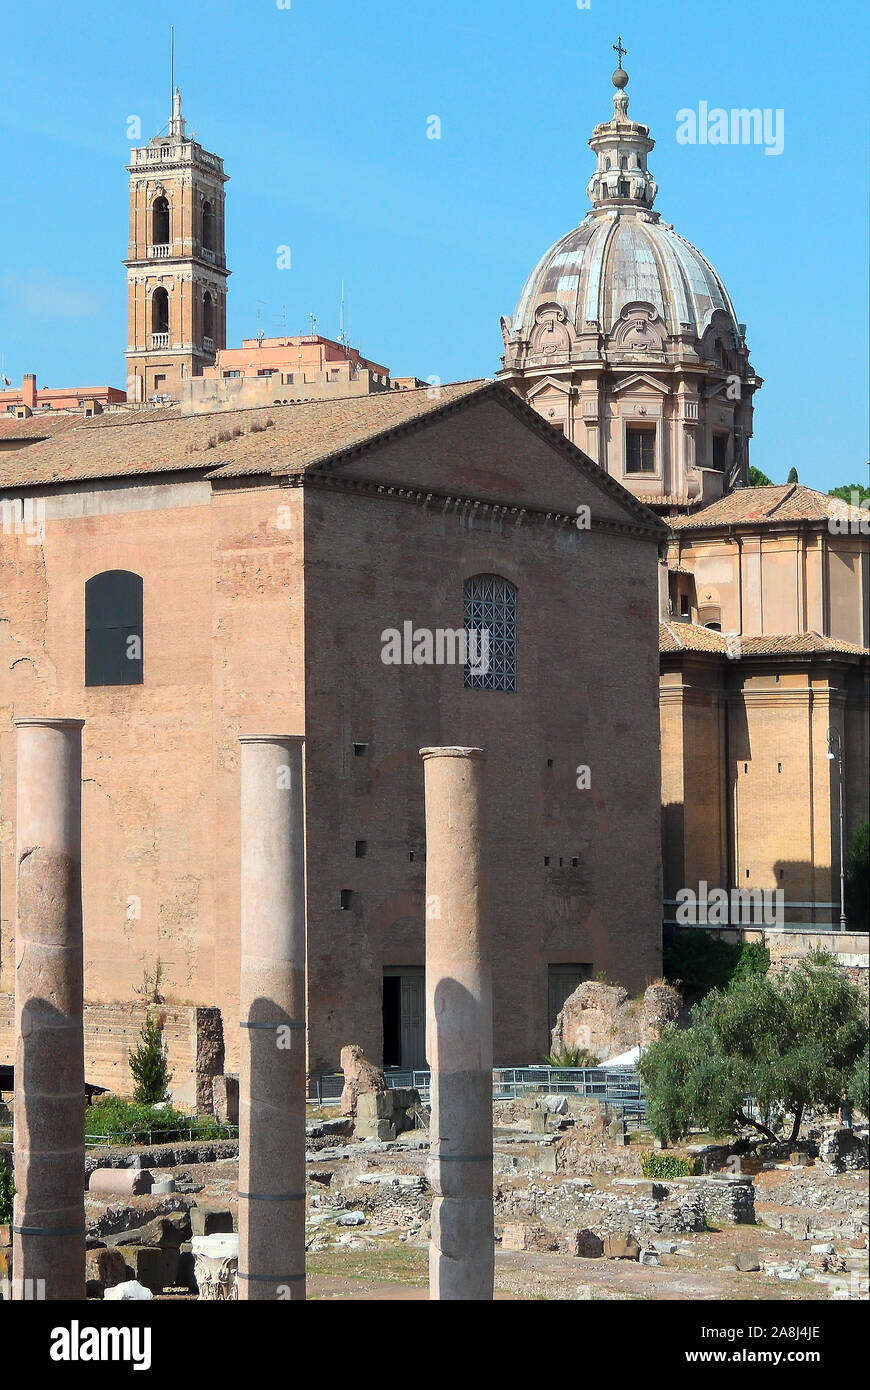 Forum Romanum im Zentrum der alten Roma in der italienischen Hauptstadt Rom - Italien. Stockfoto